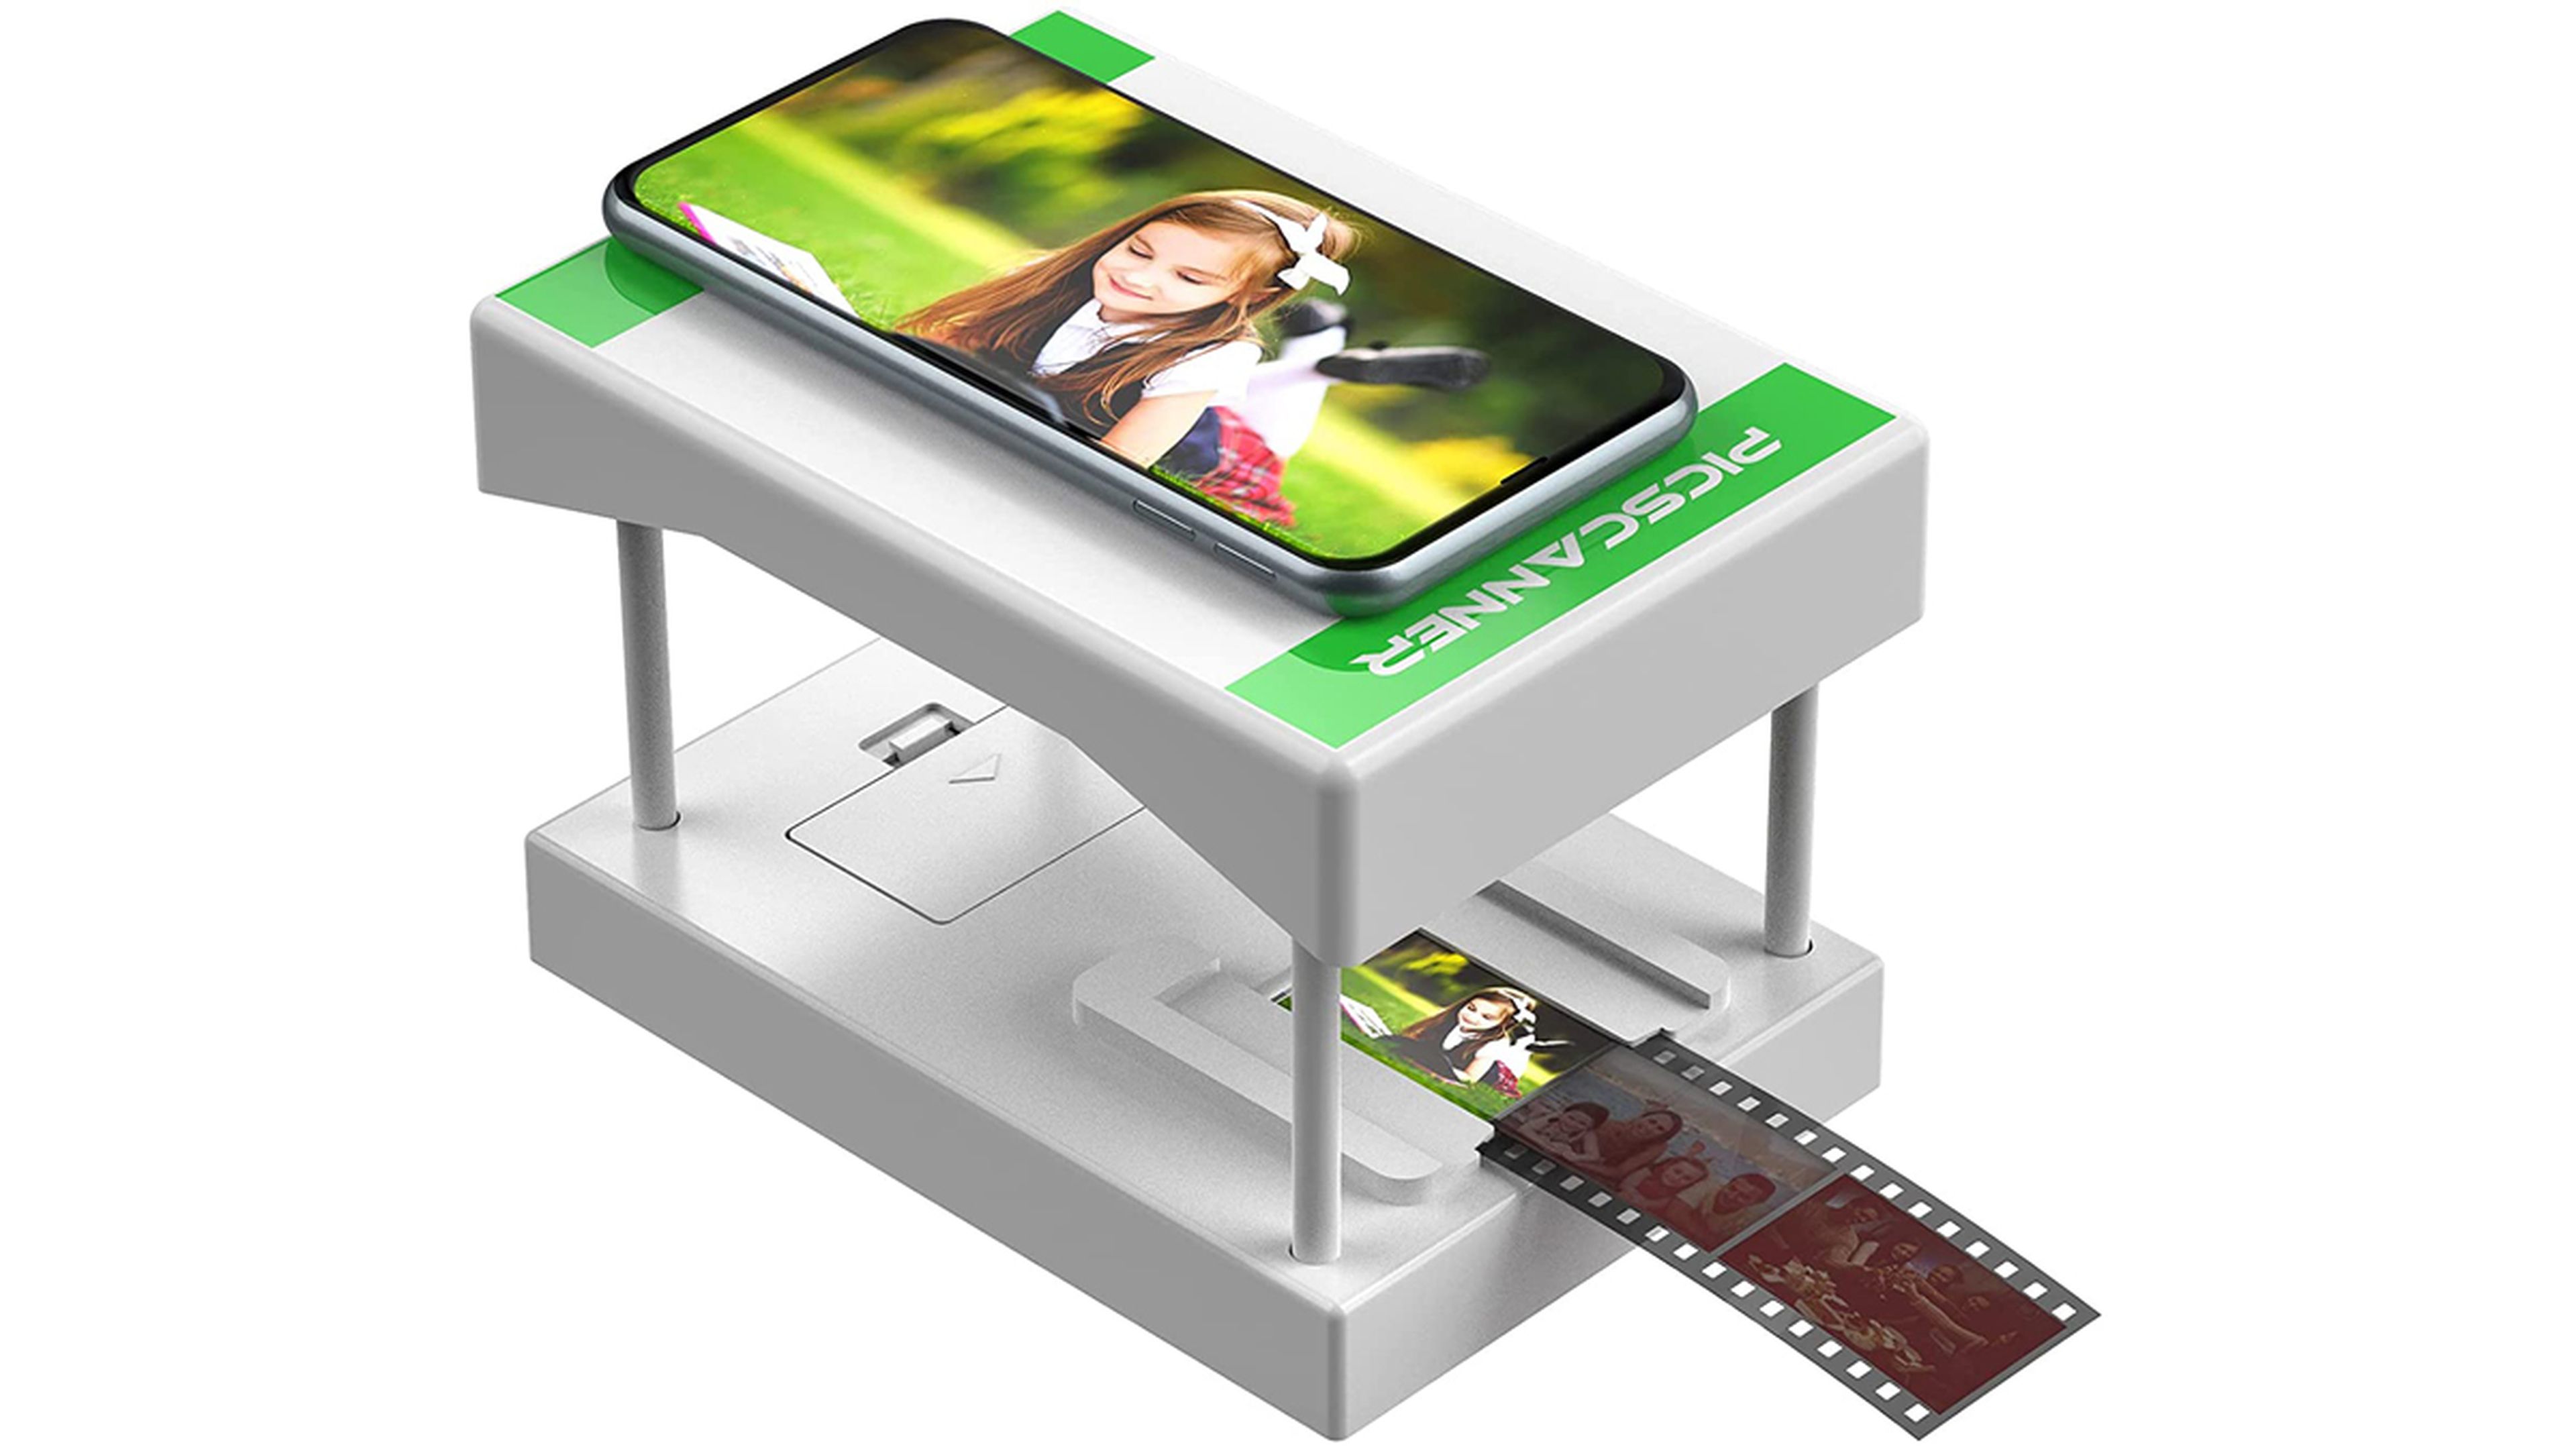 Rybozen White Mobile Film Scanner